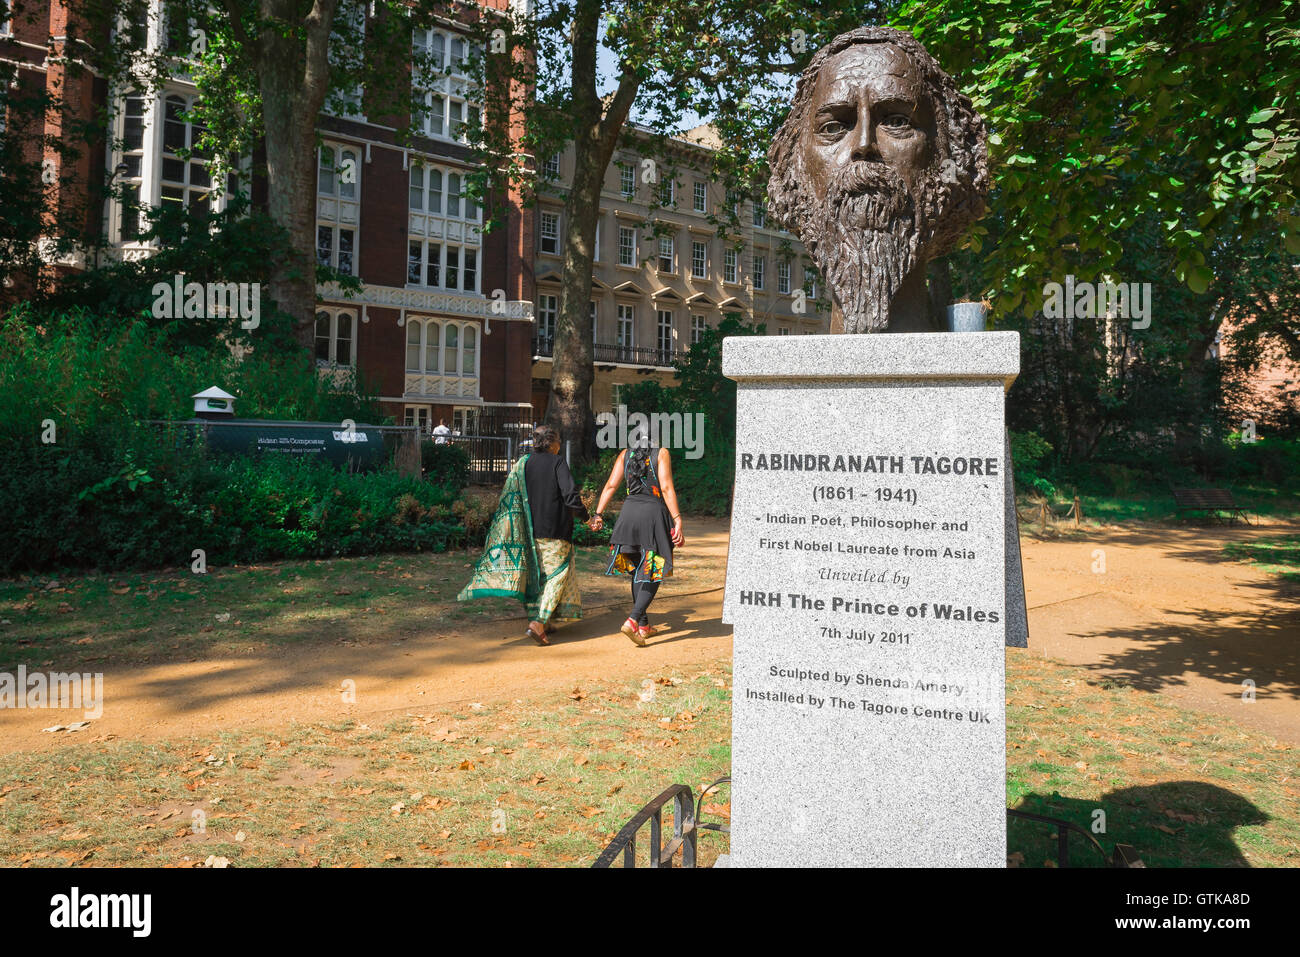 Gordon Square de Londres, una madre y su hija pasar la estatua de Rabindranath Tagore en Gordon Square, Bloomsbury, Reino Unido. Foto de stock